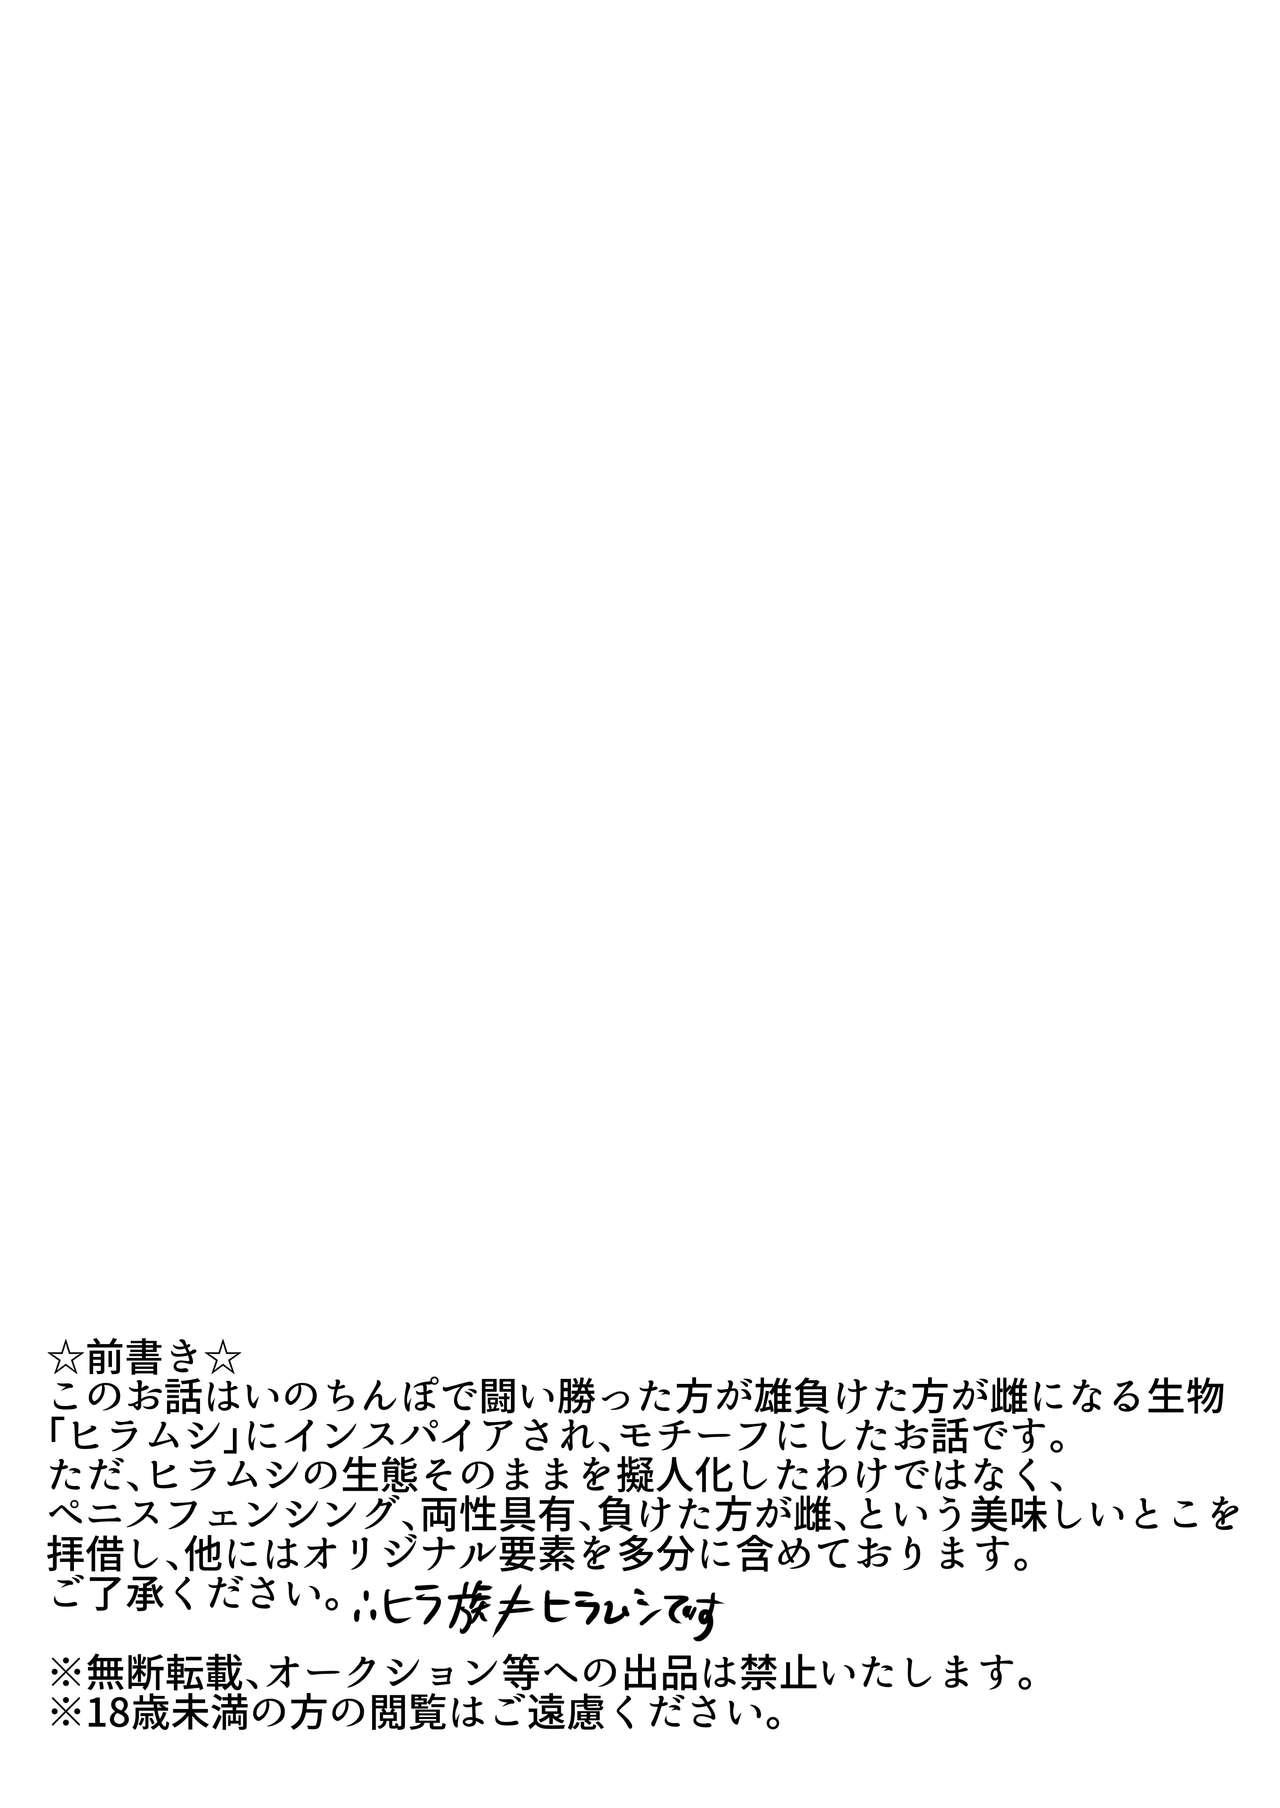 Prima Hira-zoku no Hanashi - Original Face Sitting - Page 2